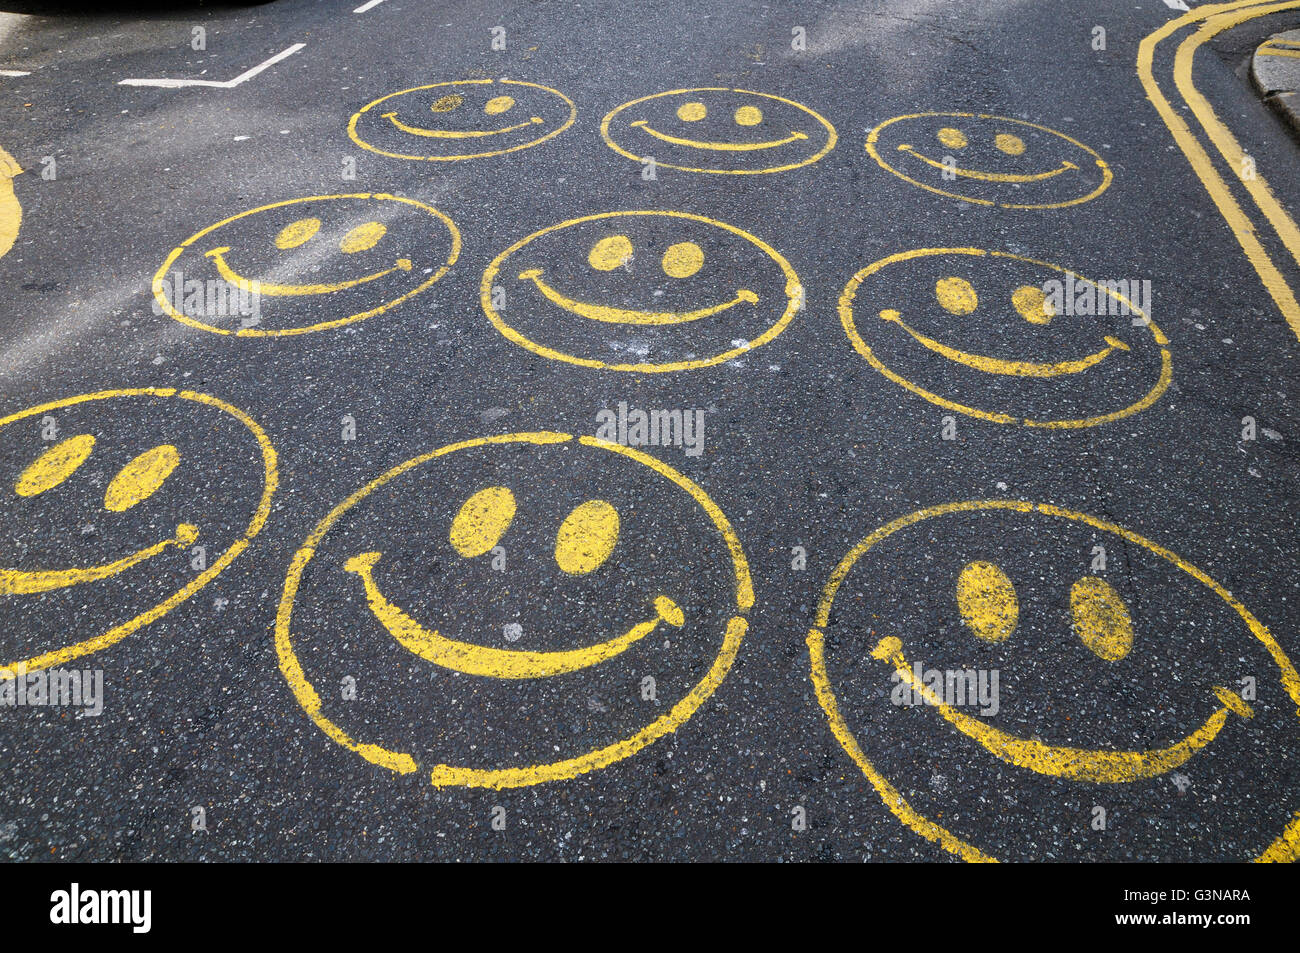 Smiley-Gesichter gemalt auf einer Straße Stockfoto